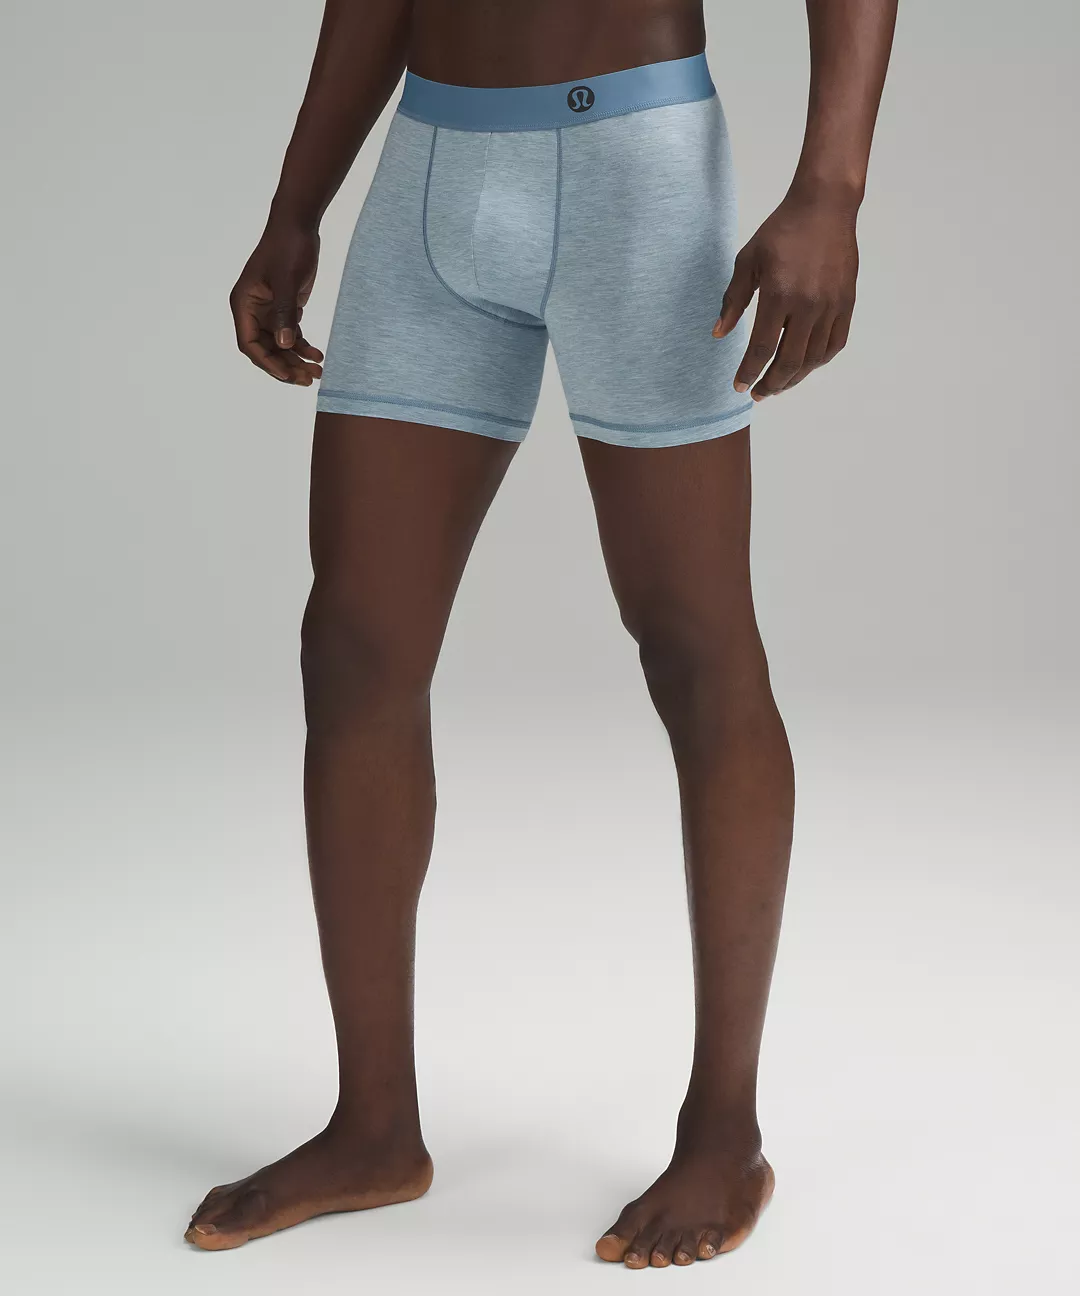 10 Best Men's Underwear Brands: Where to Shop for Men's Underwear